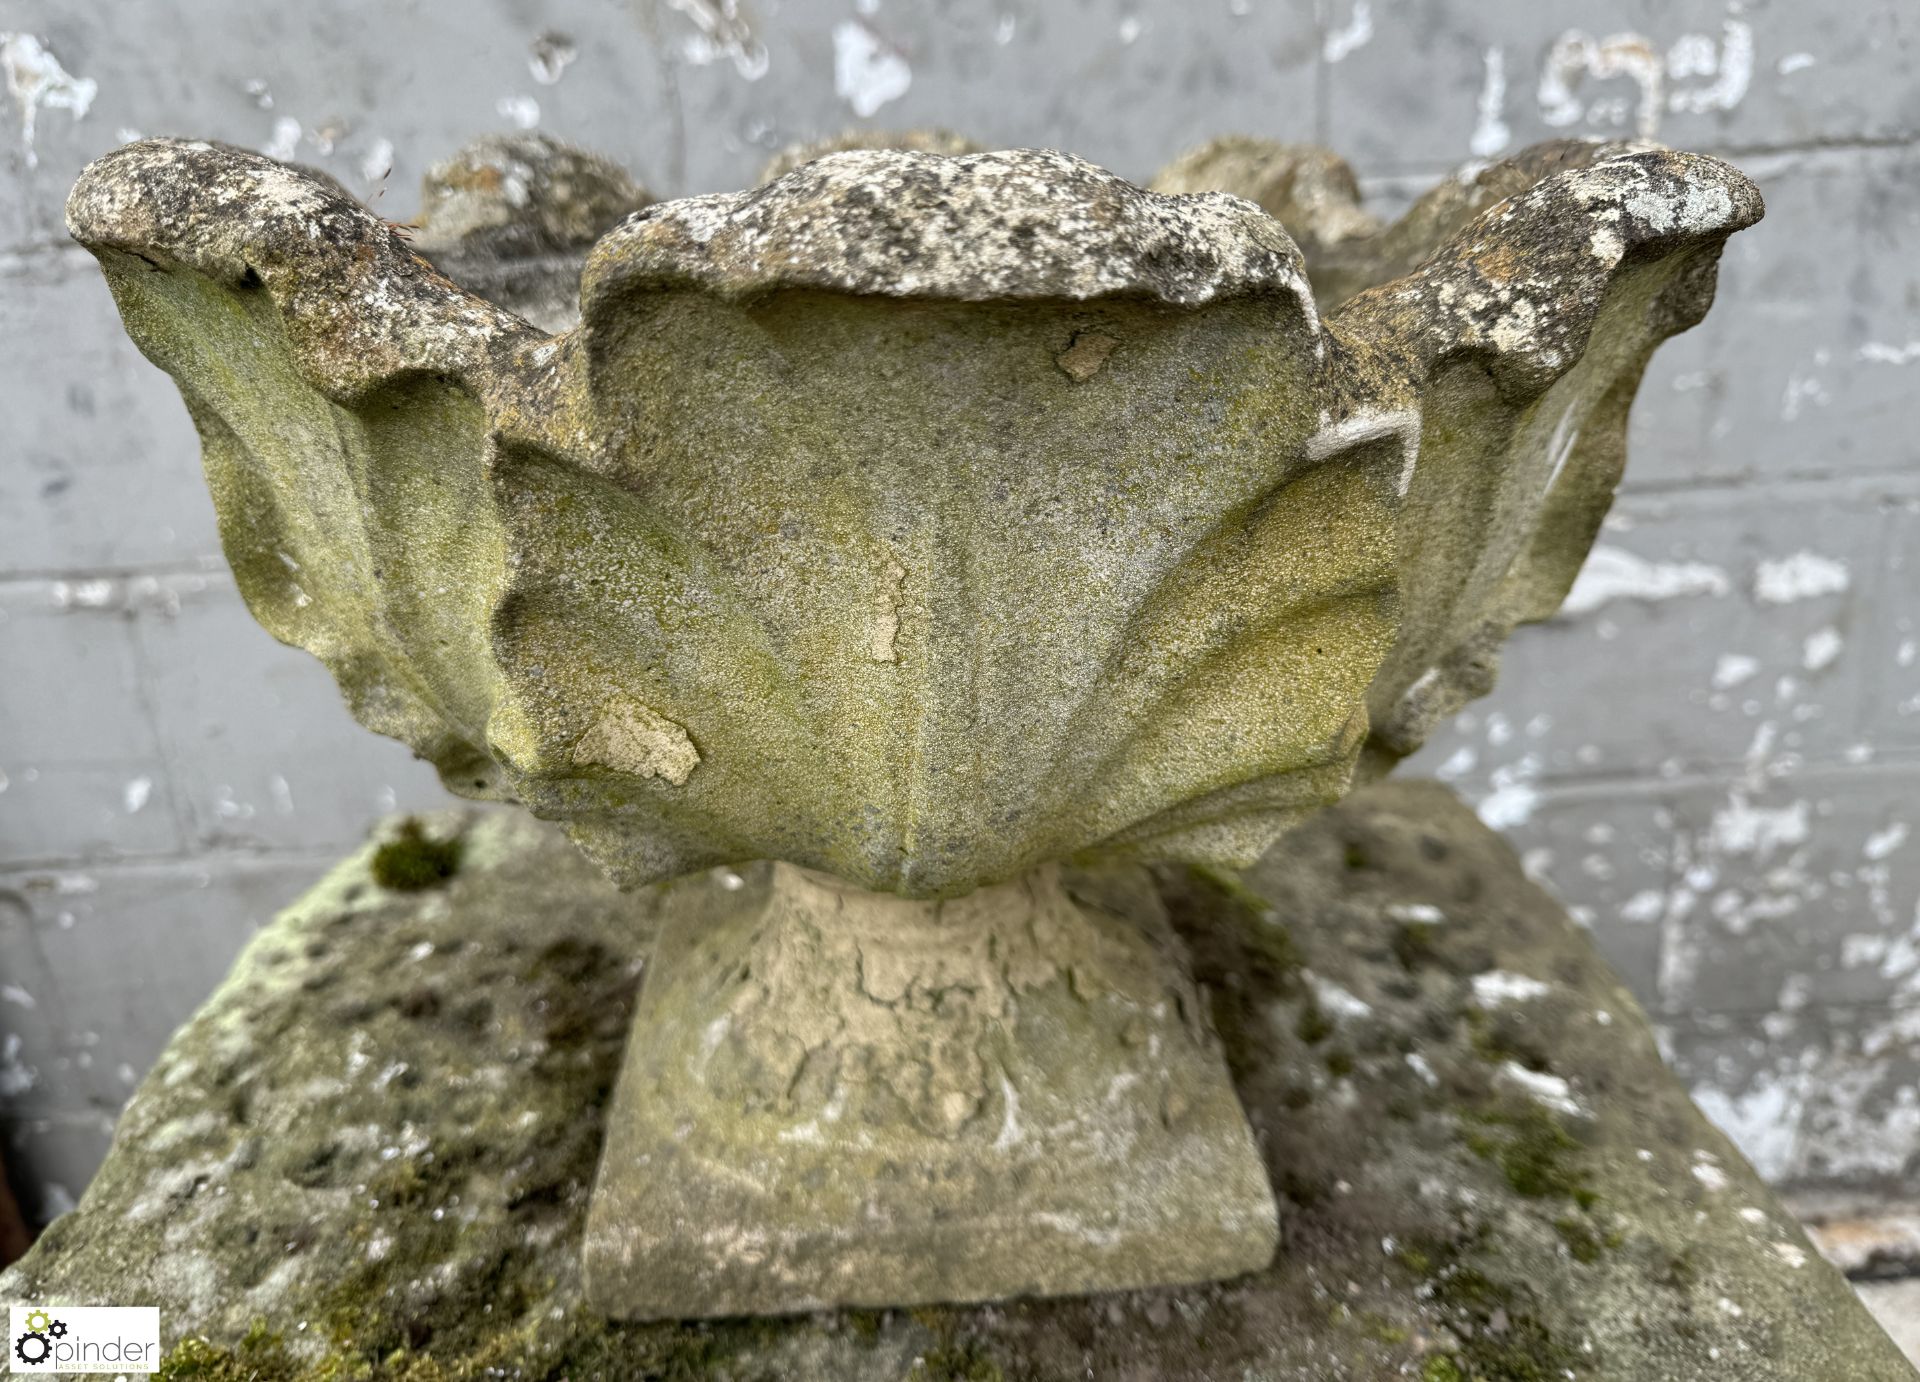 Reconstituted stone ornate Garden Urn/Planter, 420mm diameter x 320mm